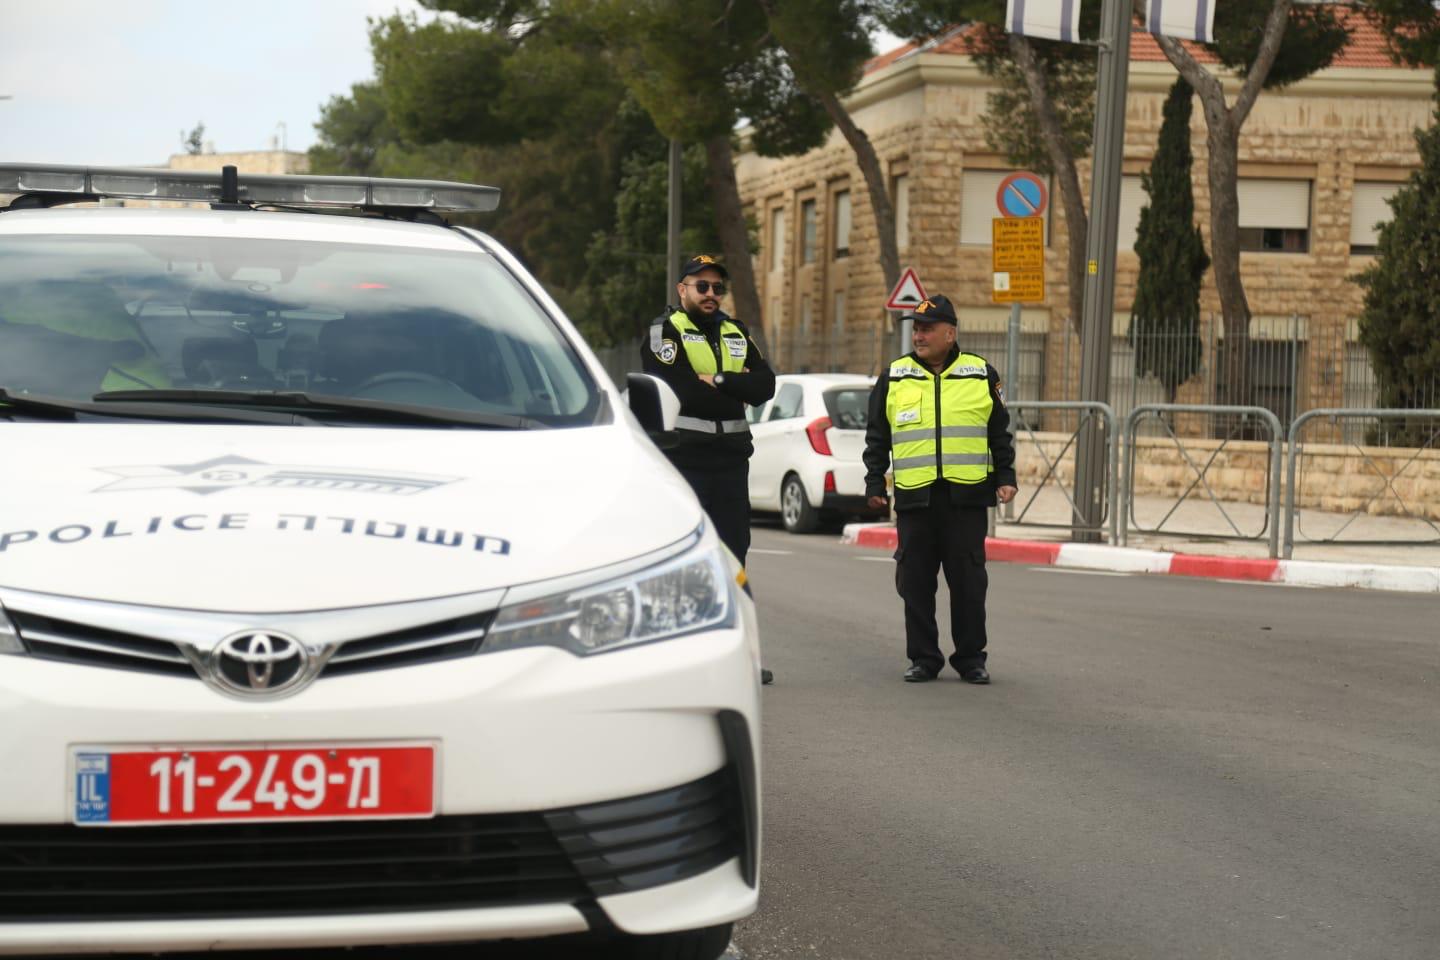 היערכות המשטרה וחסימות כבישים בירושלים לקראת הגעת מנהיגי עולם לעיר, 22 בינואר 2020 (צילום: דוברות המשטרה)